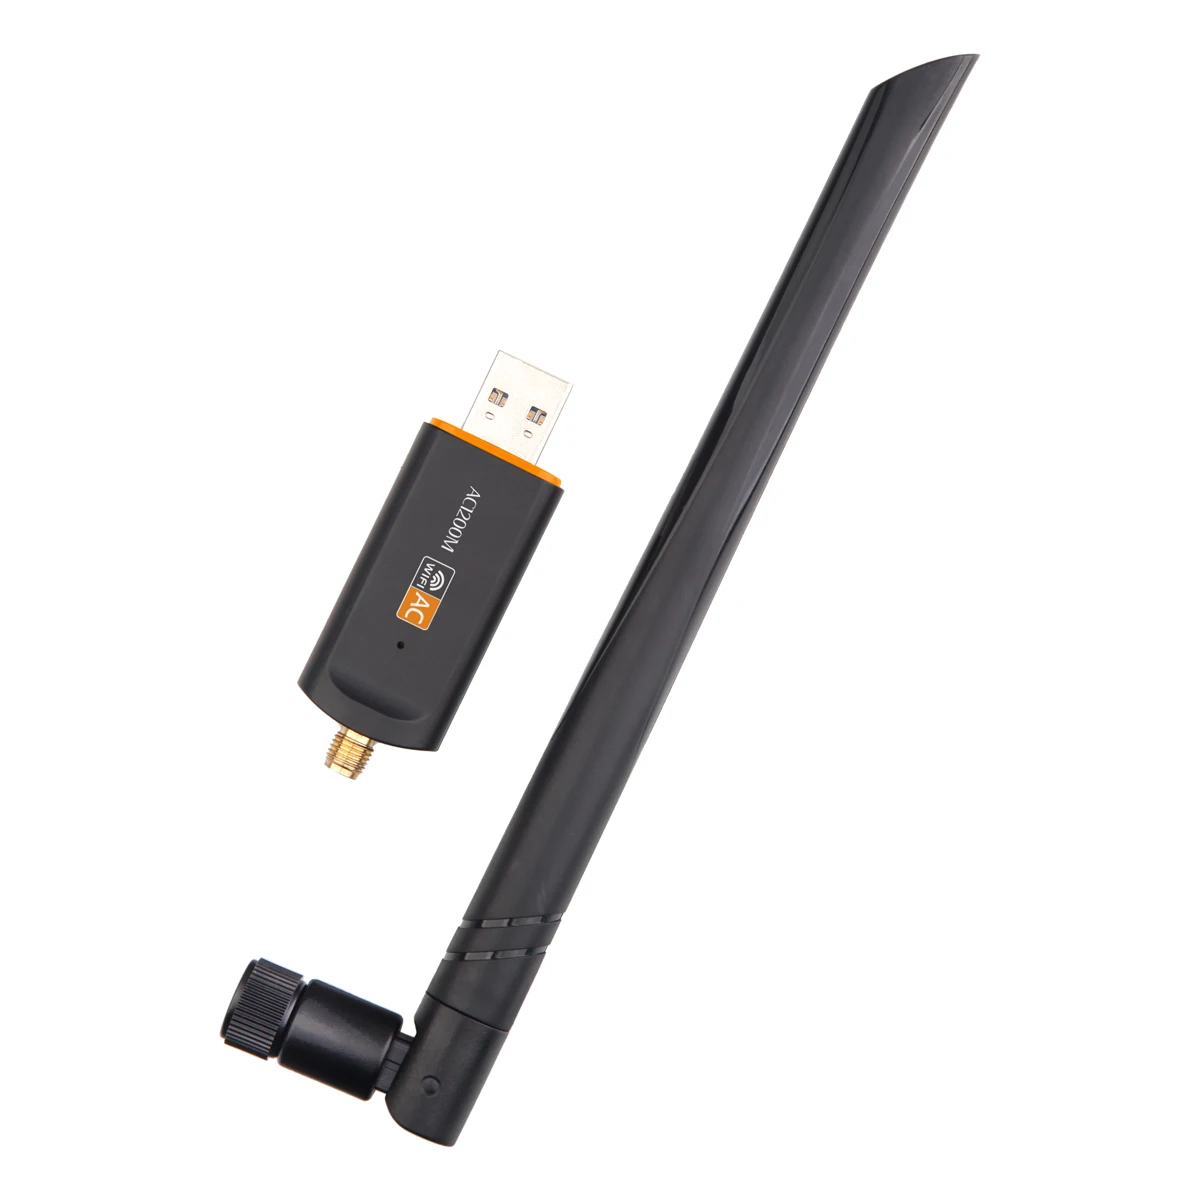 Realtek 8812bu wireless. USB WIFI AC 1200. USB Wi-Fi Adapter 1200mb. Dual Band USB Adapter ac1200. Realtek 8812bu Wireless lan 802.11AC USB nic.